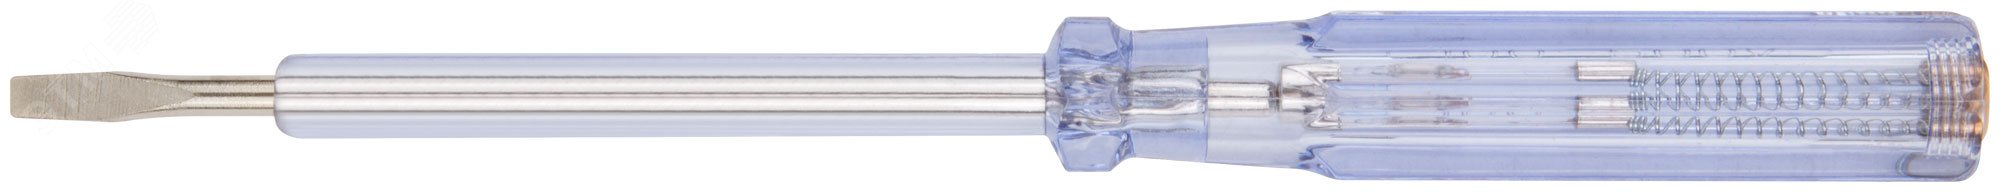 Отвертка индикаторная, белая ручка, 100-500 В, 190 мм 56529 FIT - превью